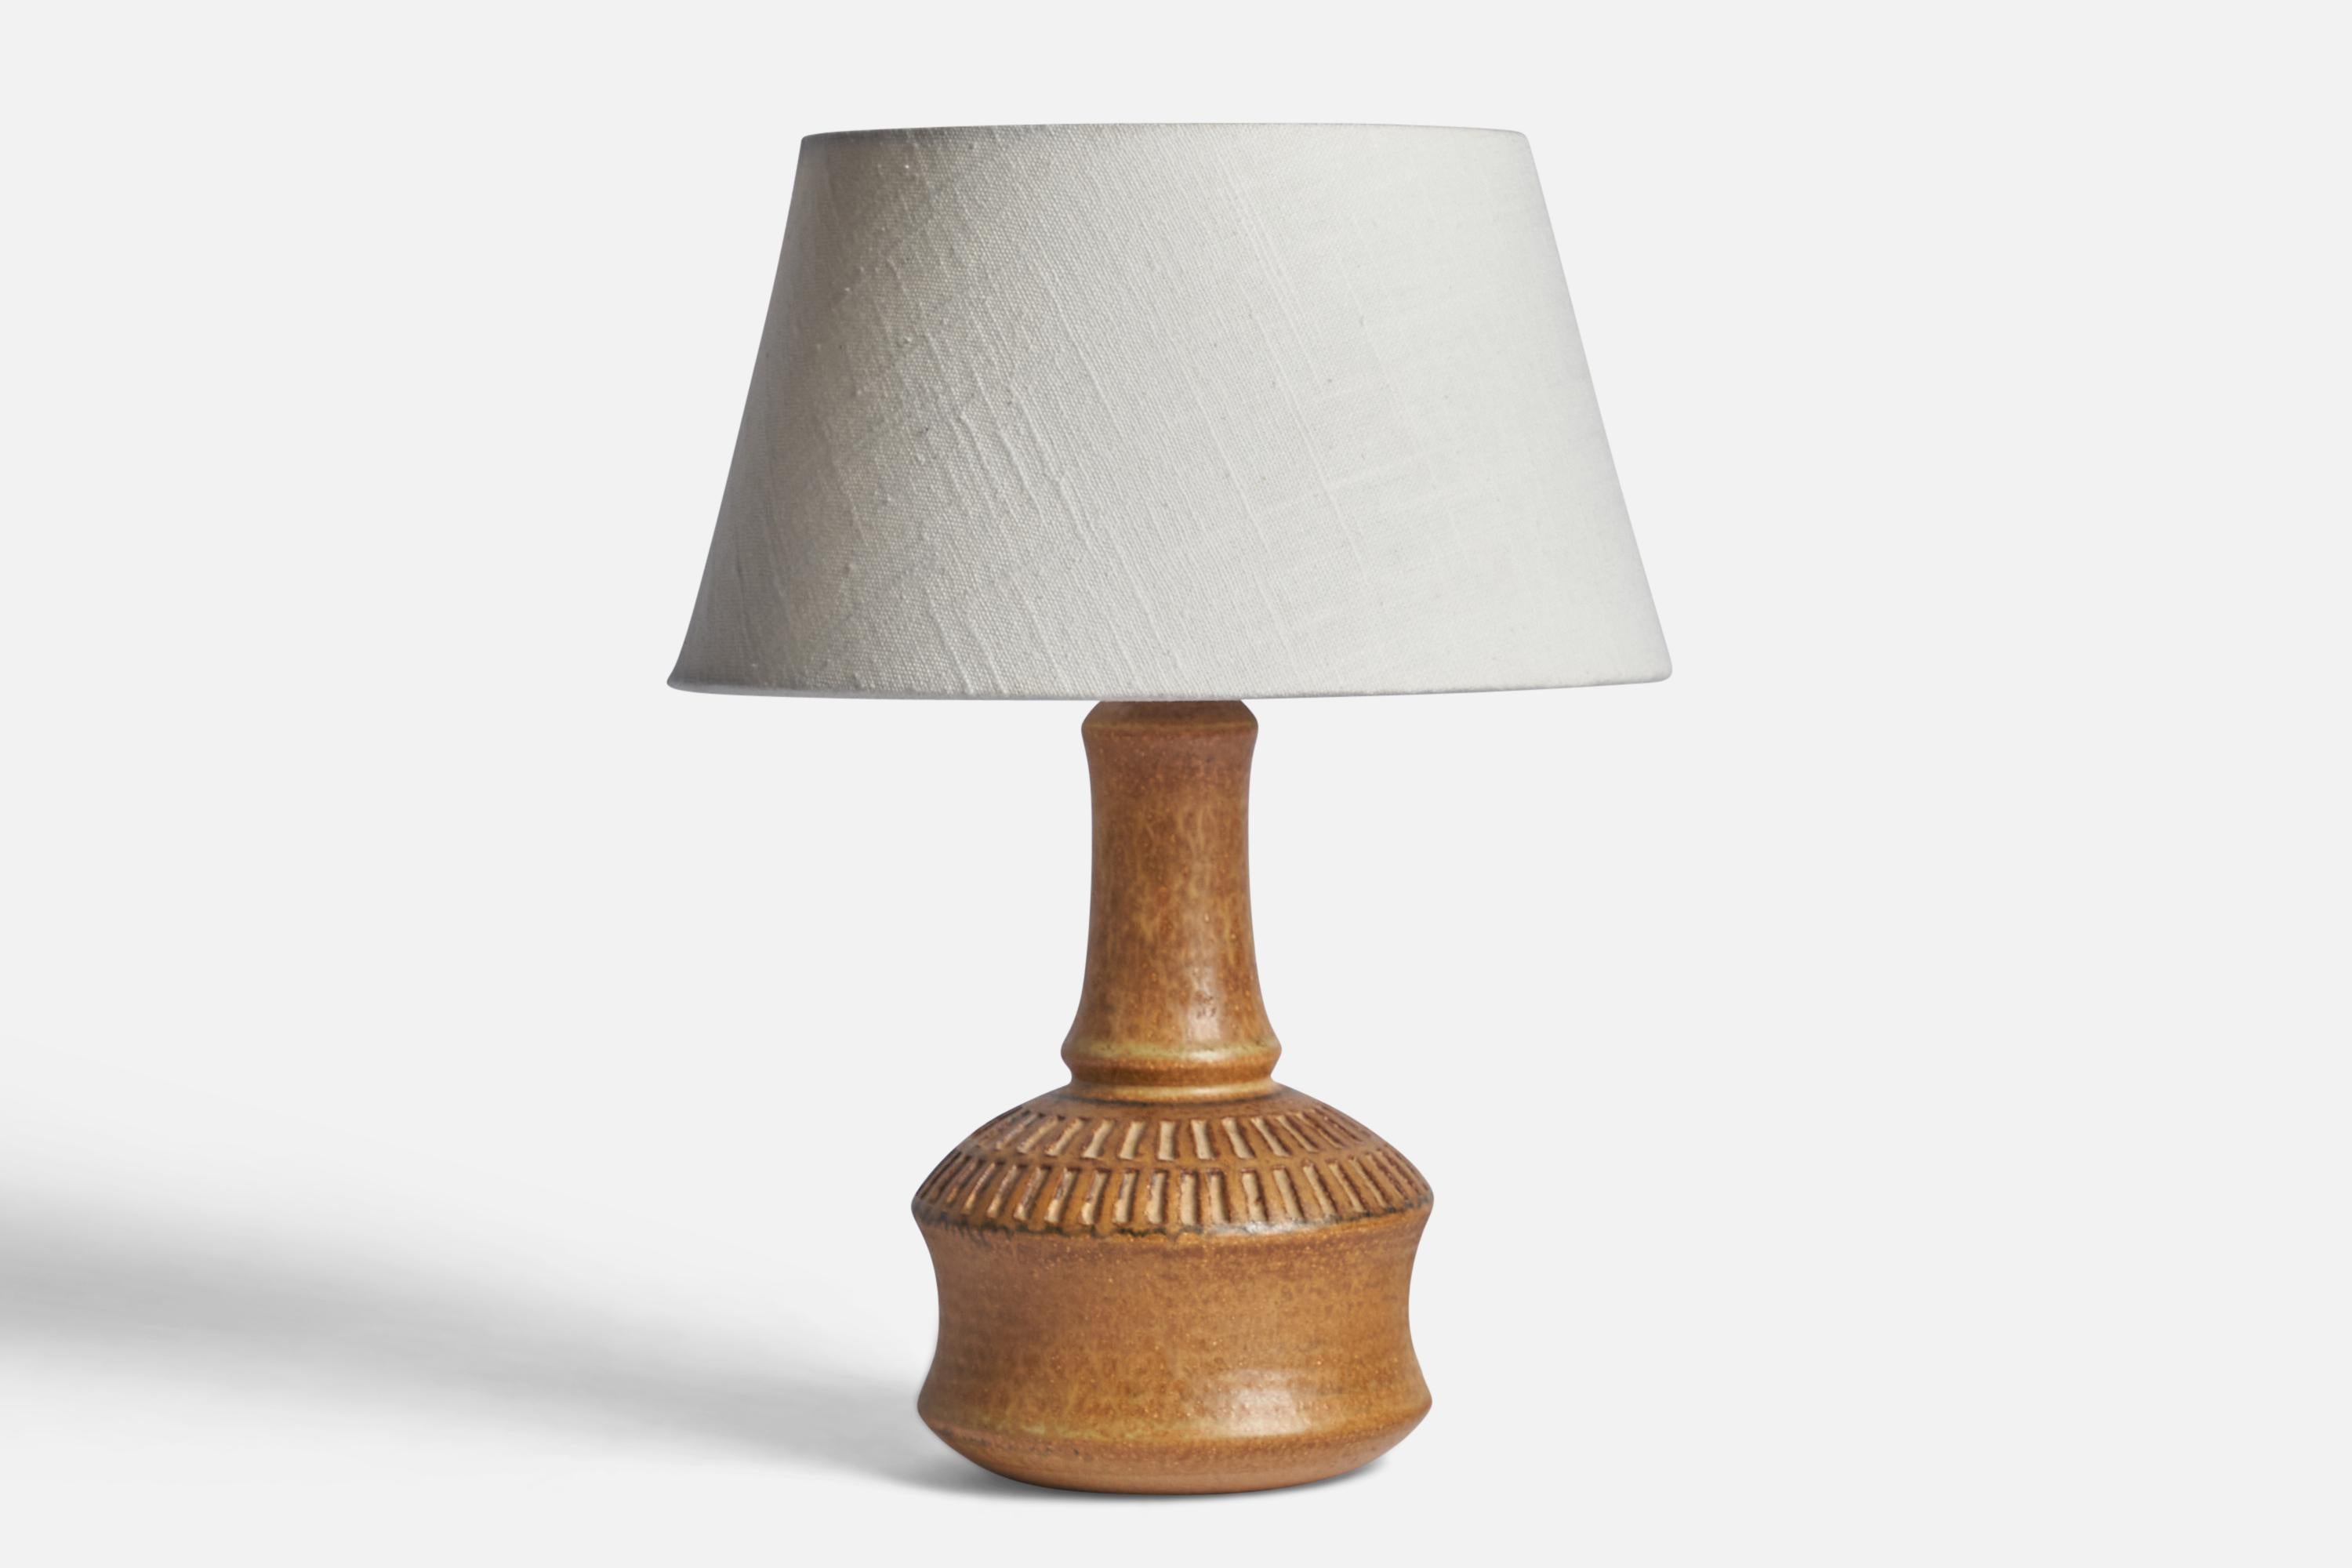 Lampe de table en grès émaillé brun clair, conçue par Joseph Simon et produite par Søholm, Bornholm, Danemark, années 1960.

Dimensions de la lampe (pouces) : 10.25